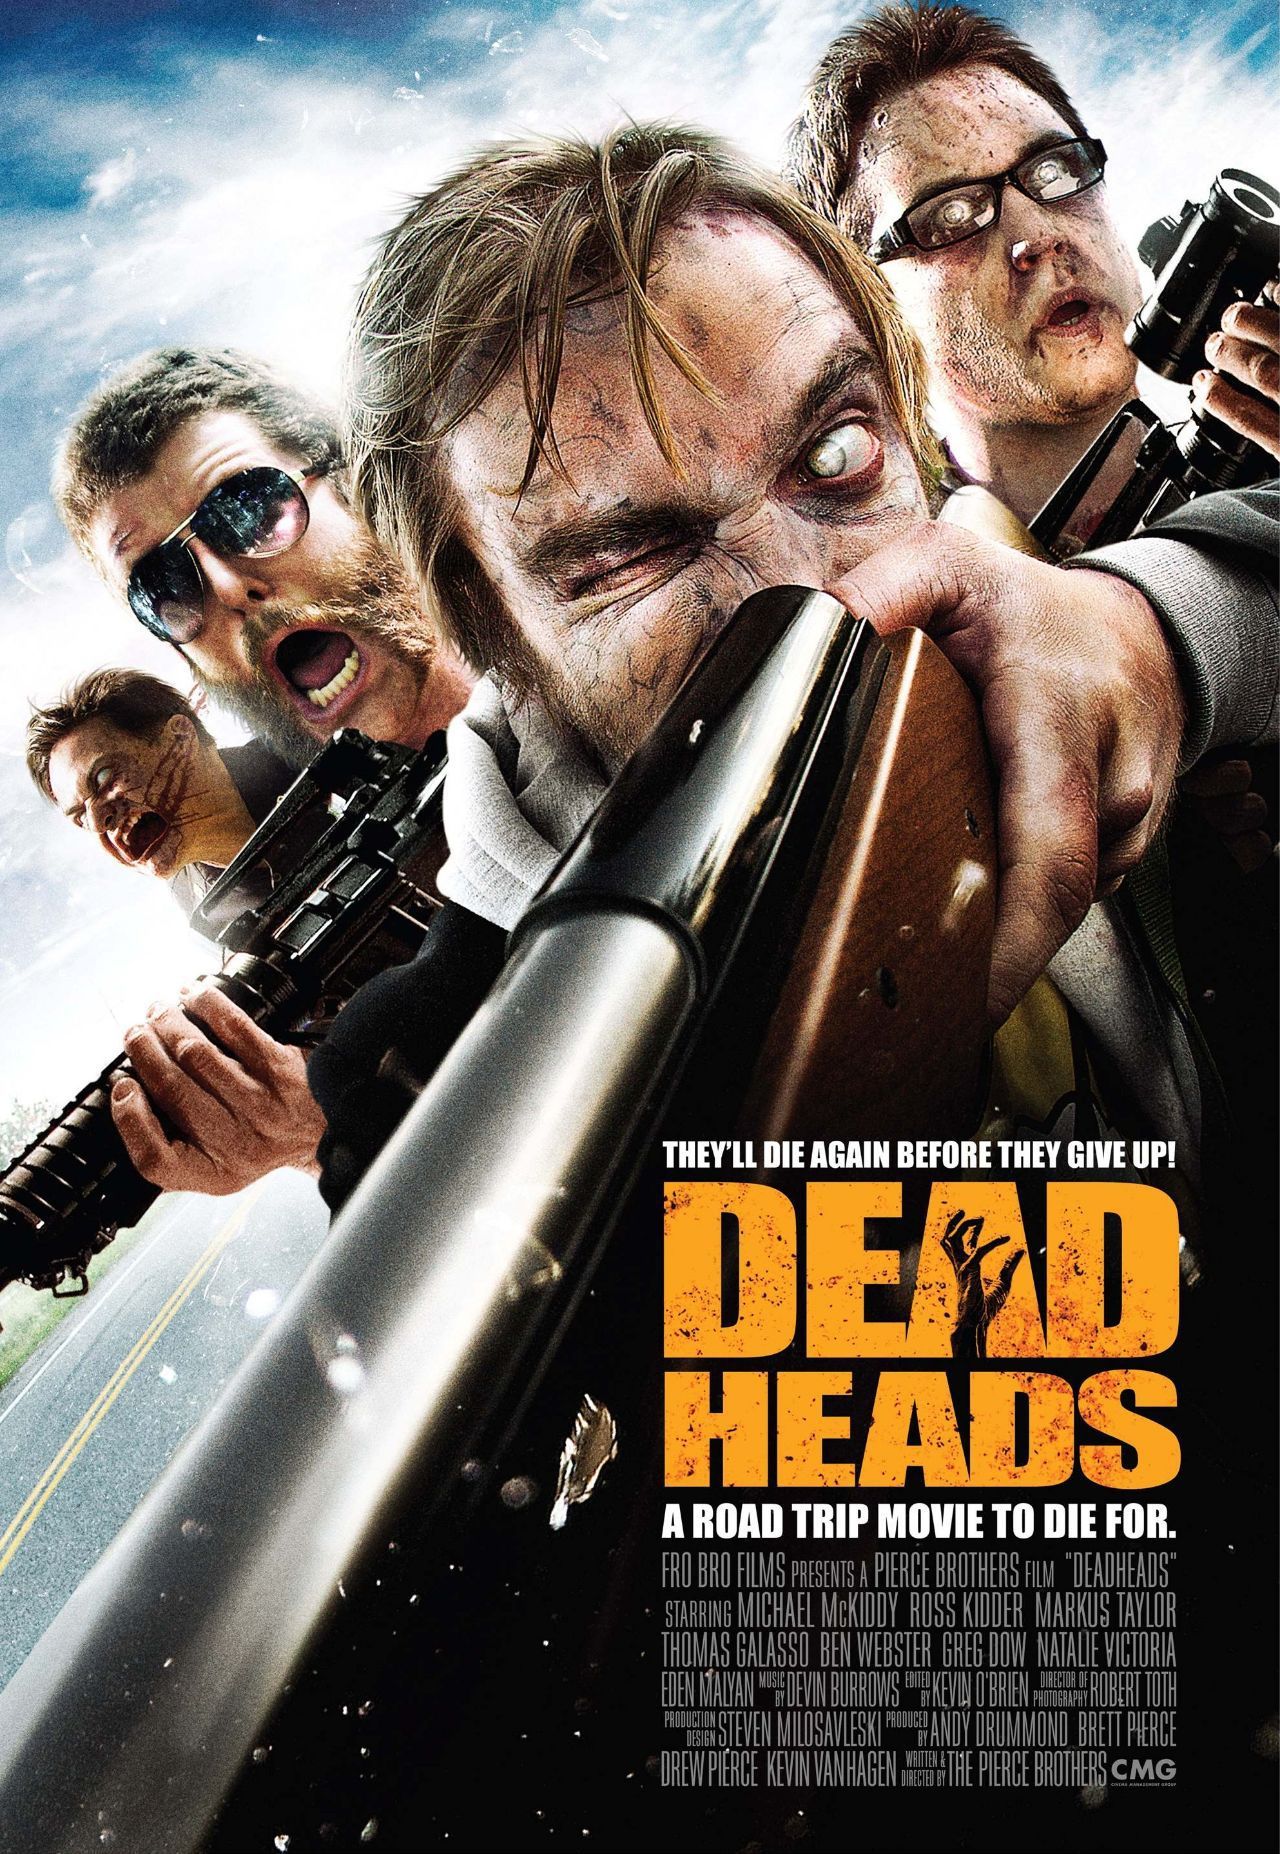 快乐丧尸 deadheads (2011)我喜欢一根筋的电影,犯傻的人最可爱,我不